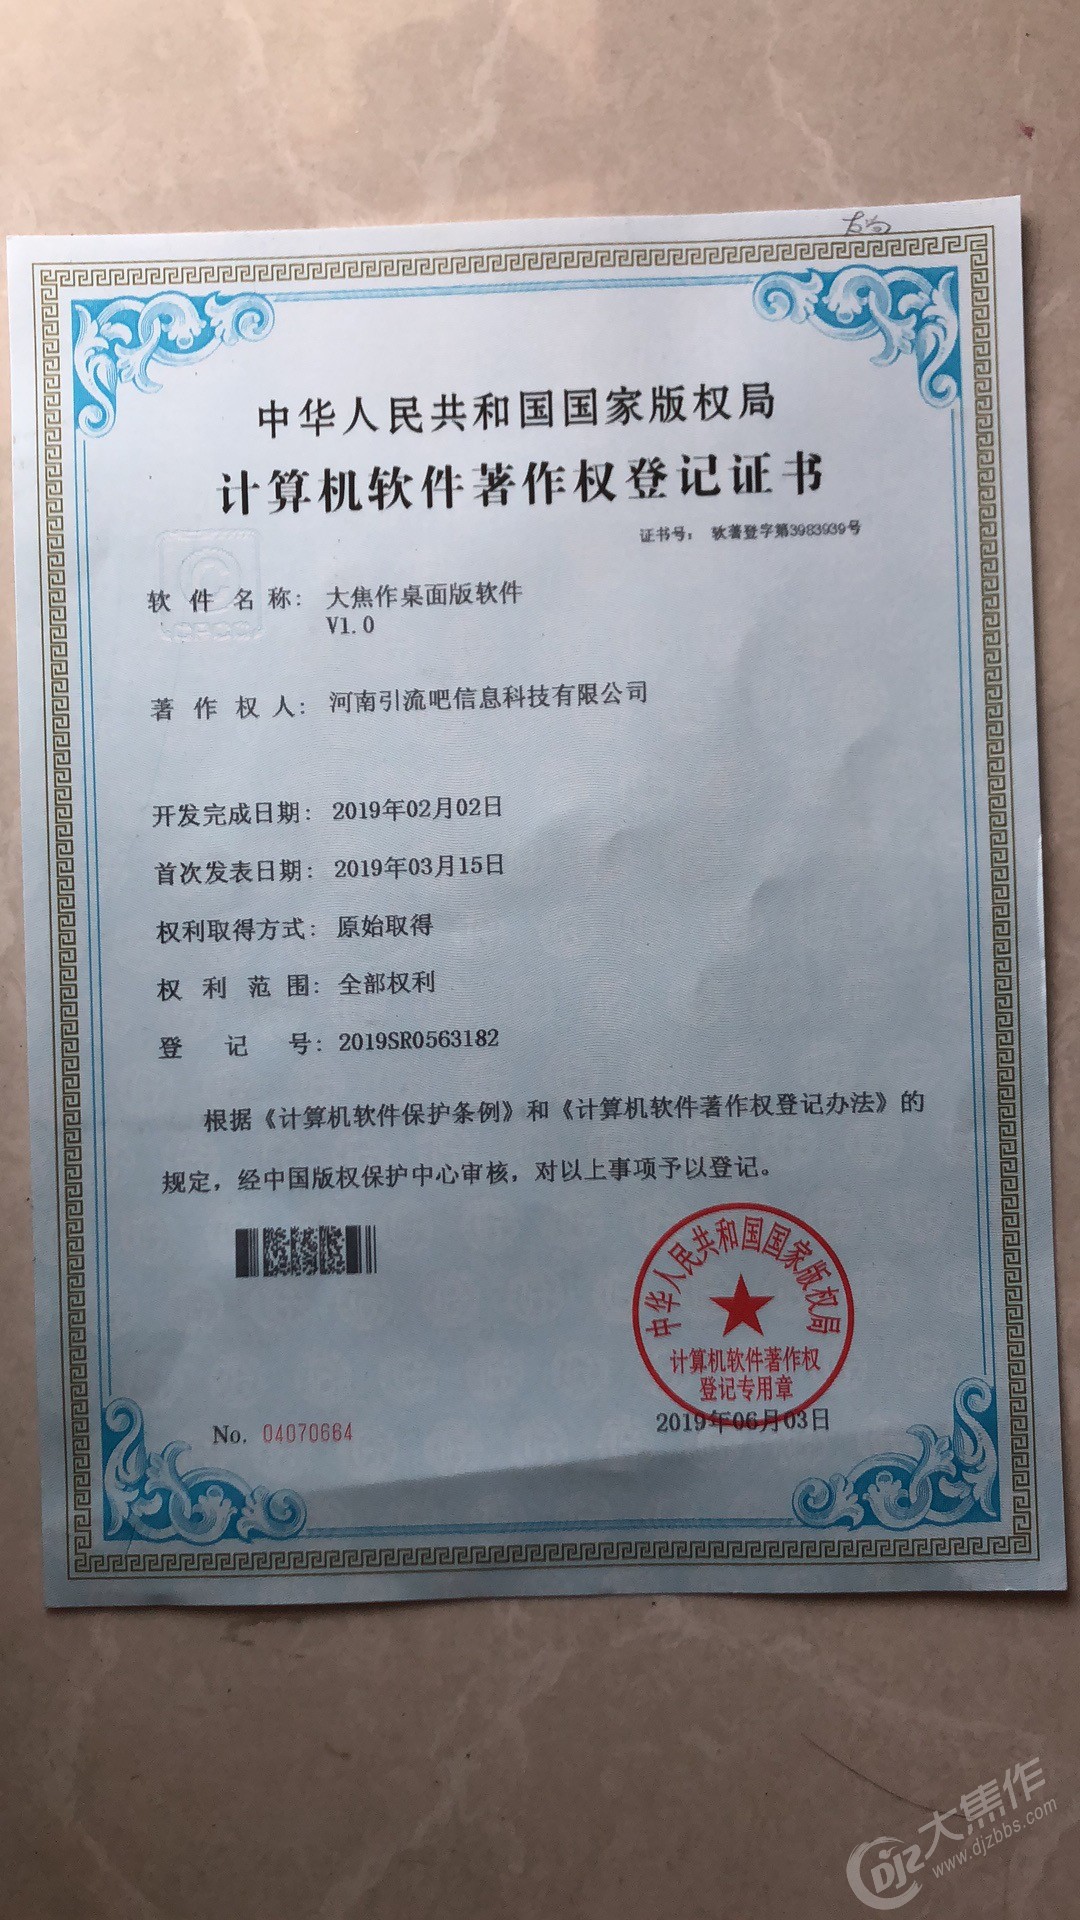 收到了中华人民共和国国家版权局颁发的2项计算机软件著作权登记证书